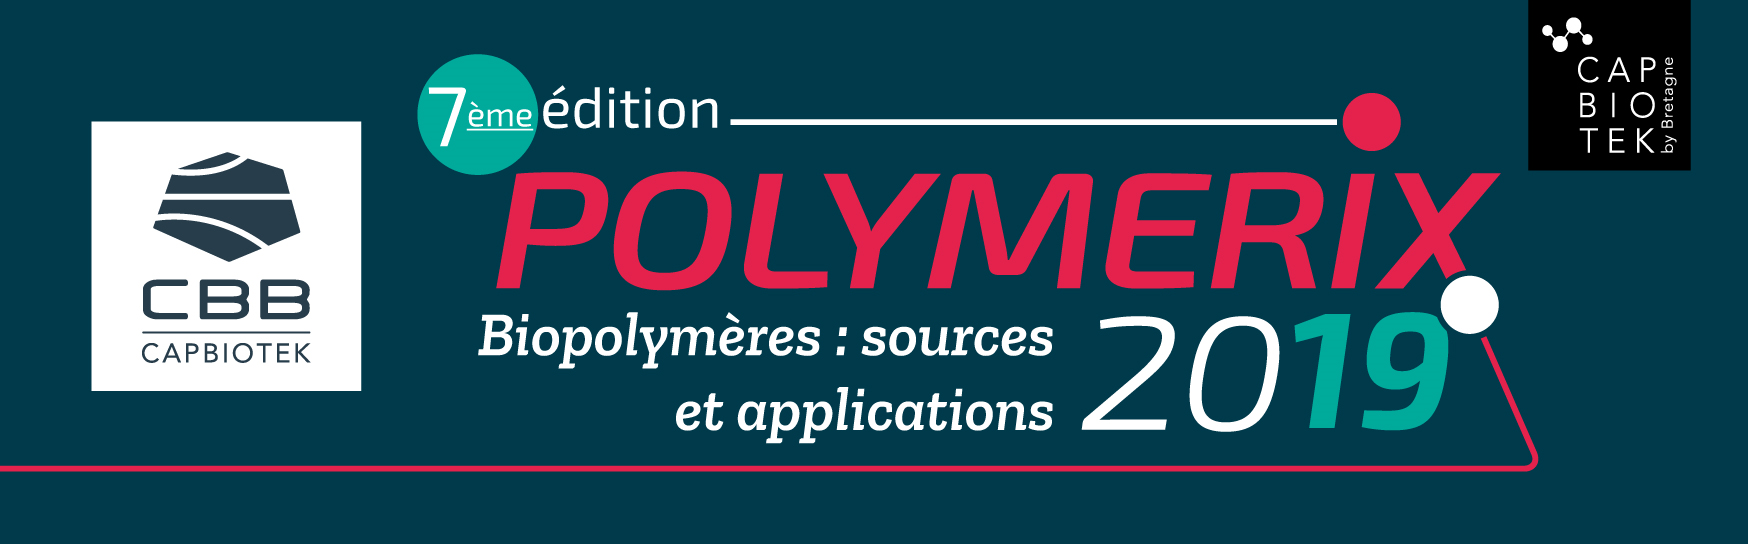 biotech info publicites bannière polymerix